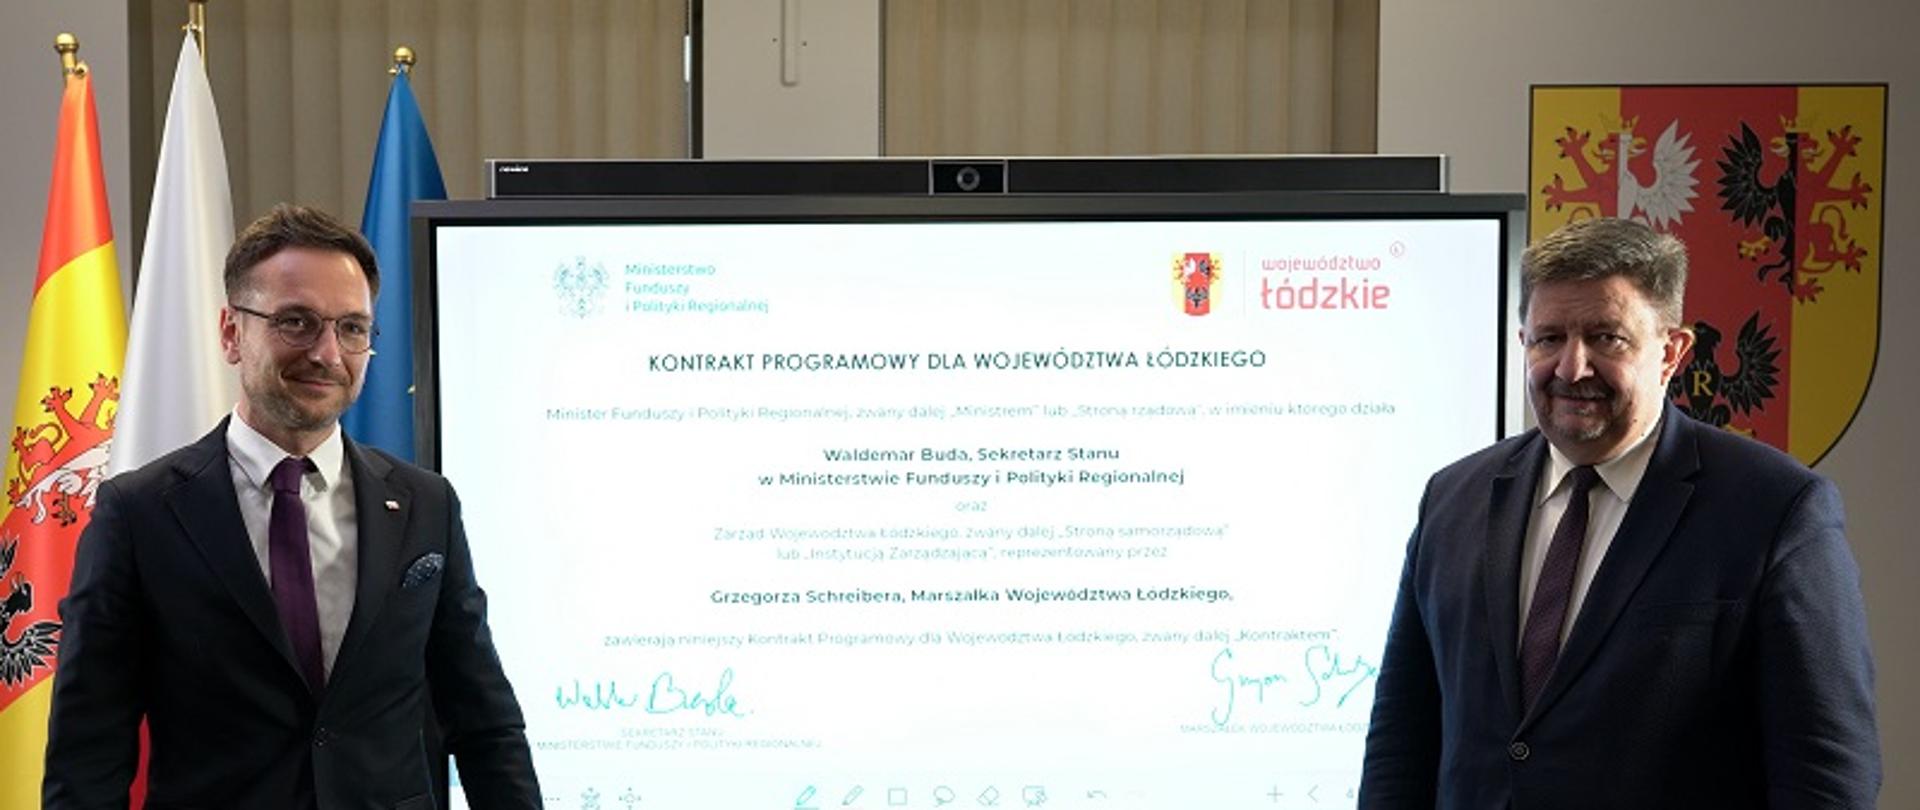 Wiceminister Waldemar Buda i marszałek Grzegorz Schreiber stoją na tle interaktywnej tablicy, na której widać podpisany kontrakt programowy dla woj. łódzkiego